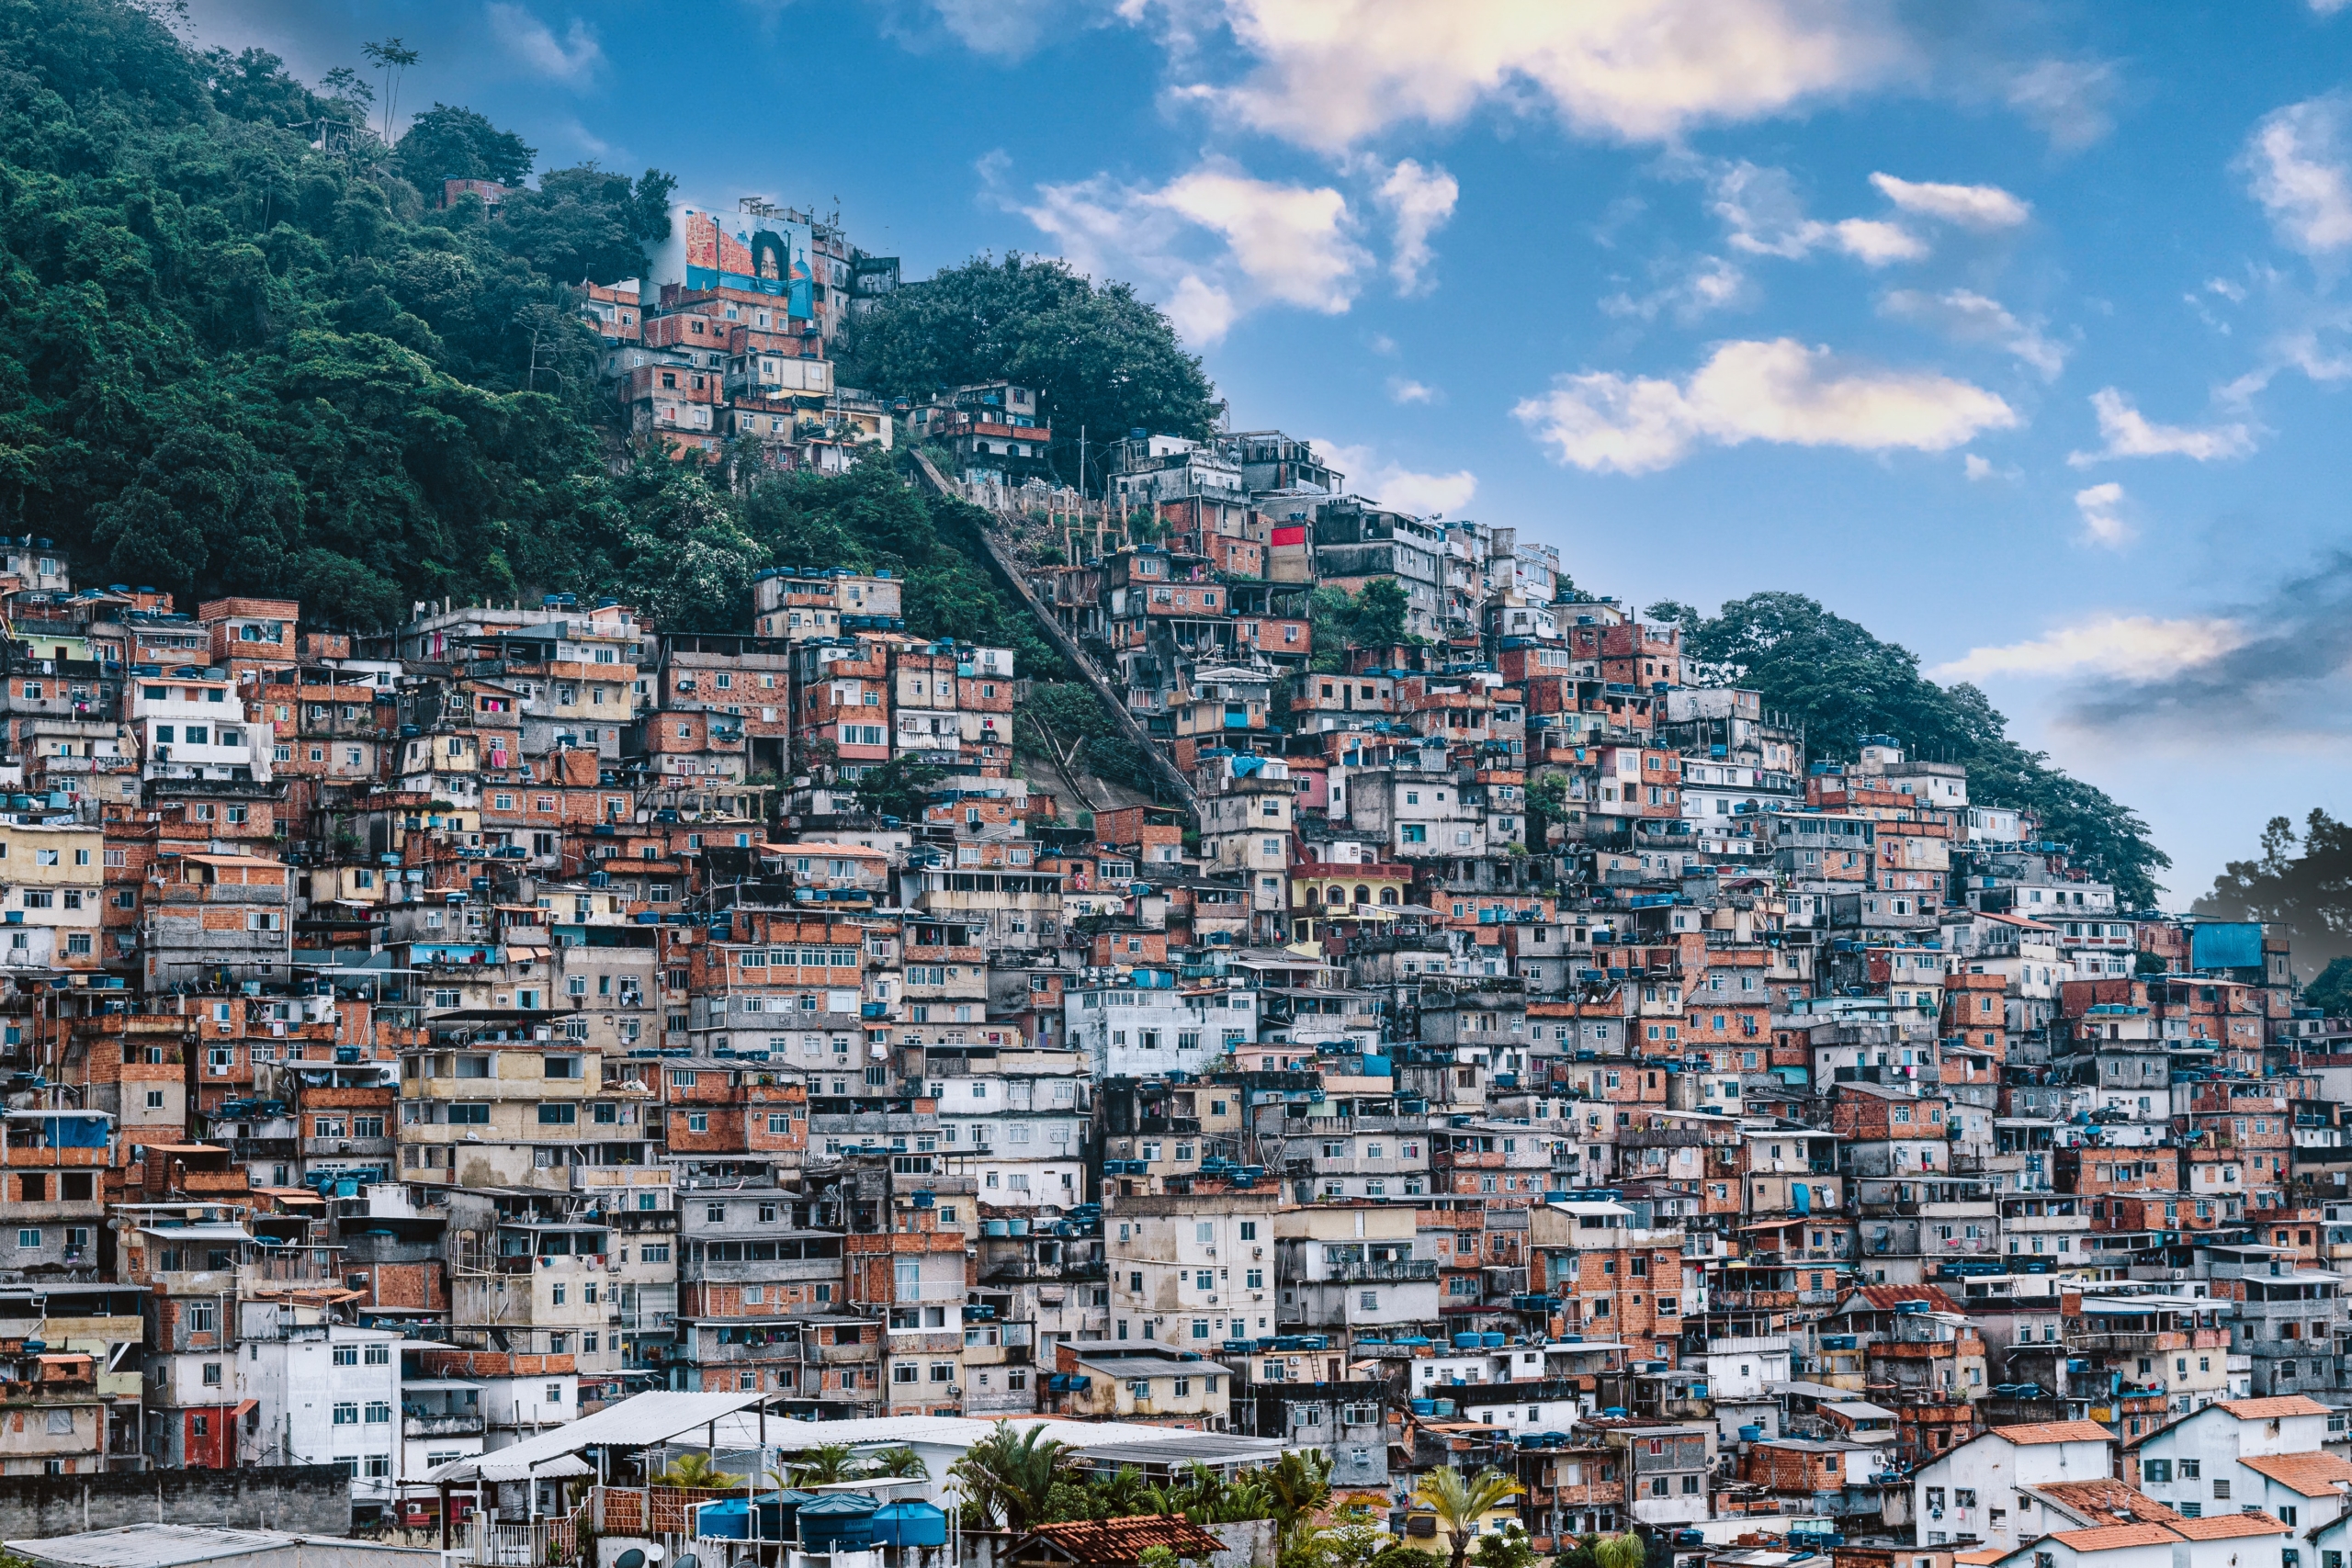 Rio de Janeiro’s Favelas